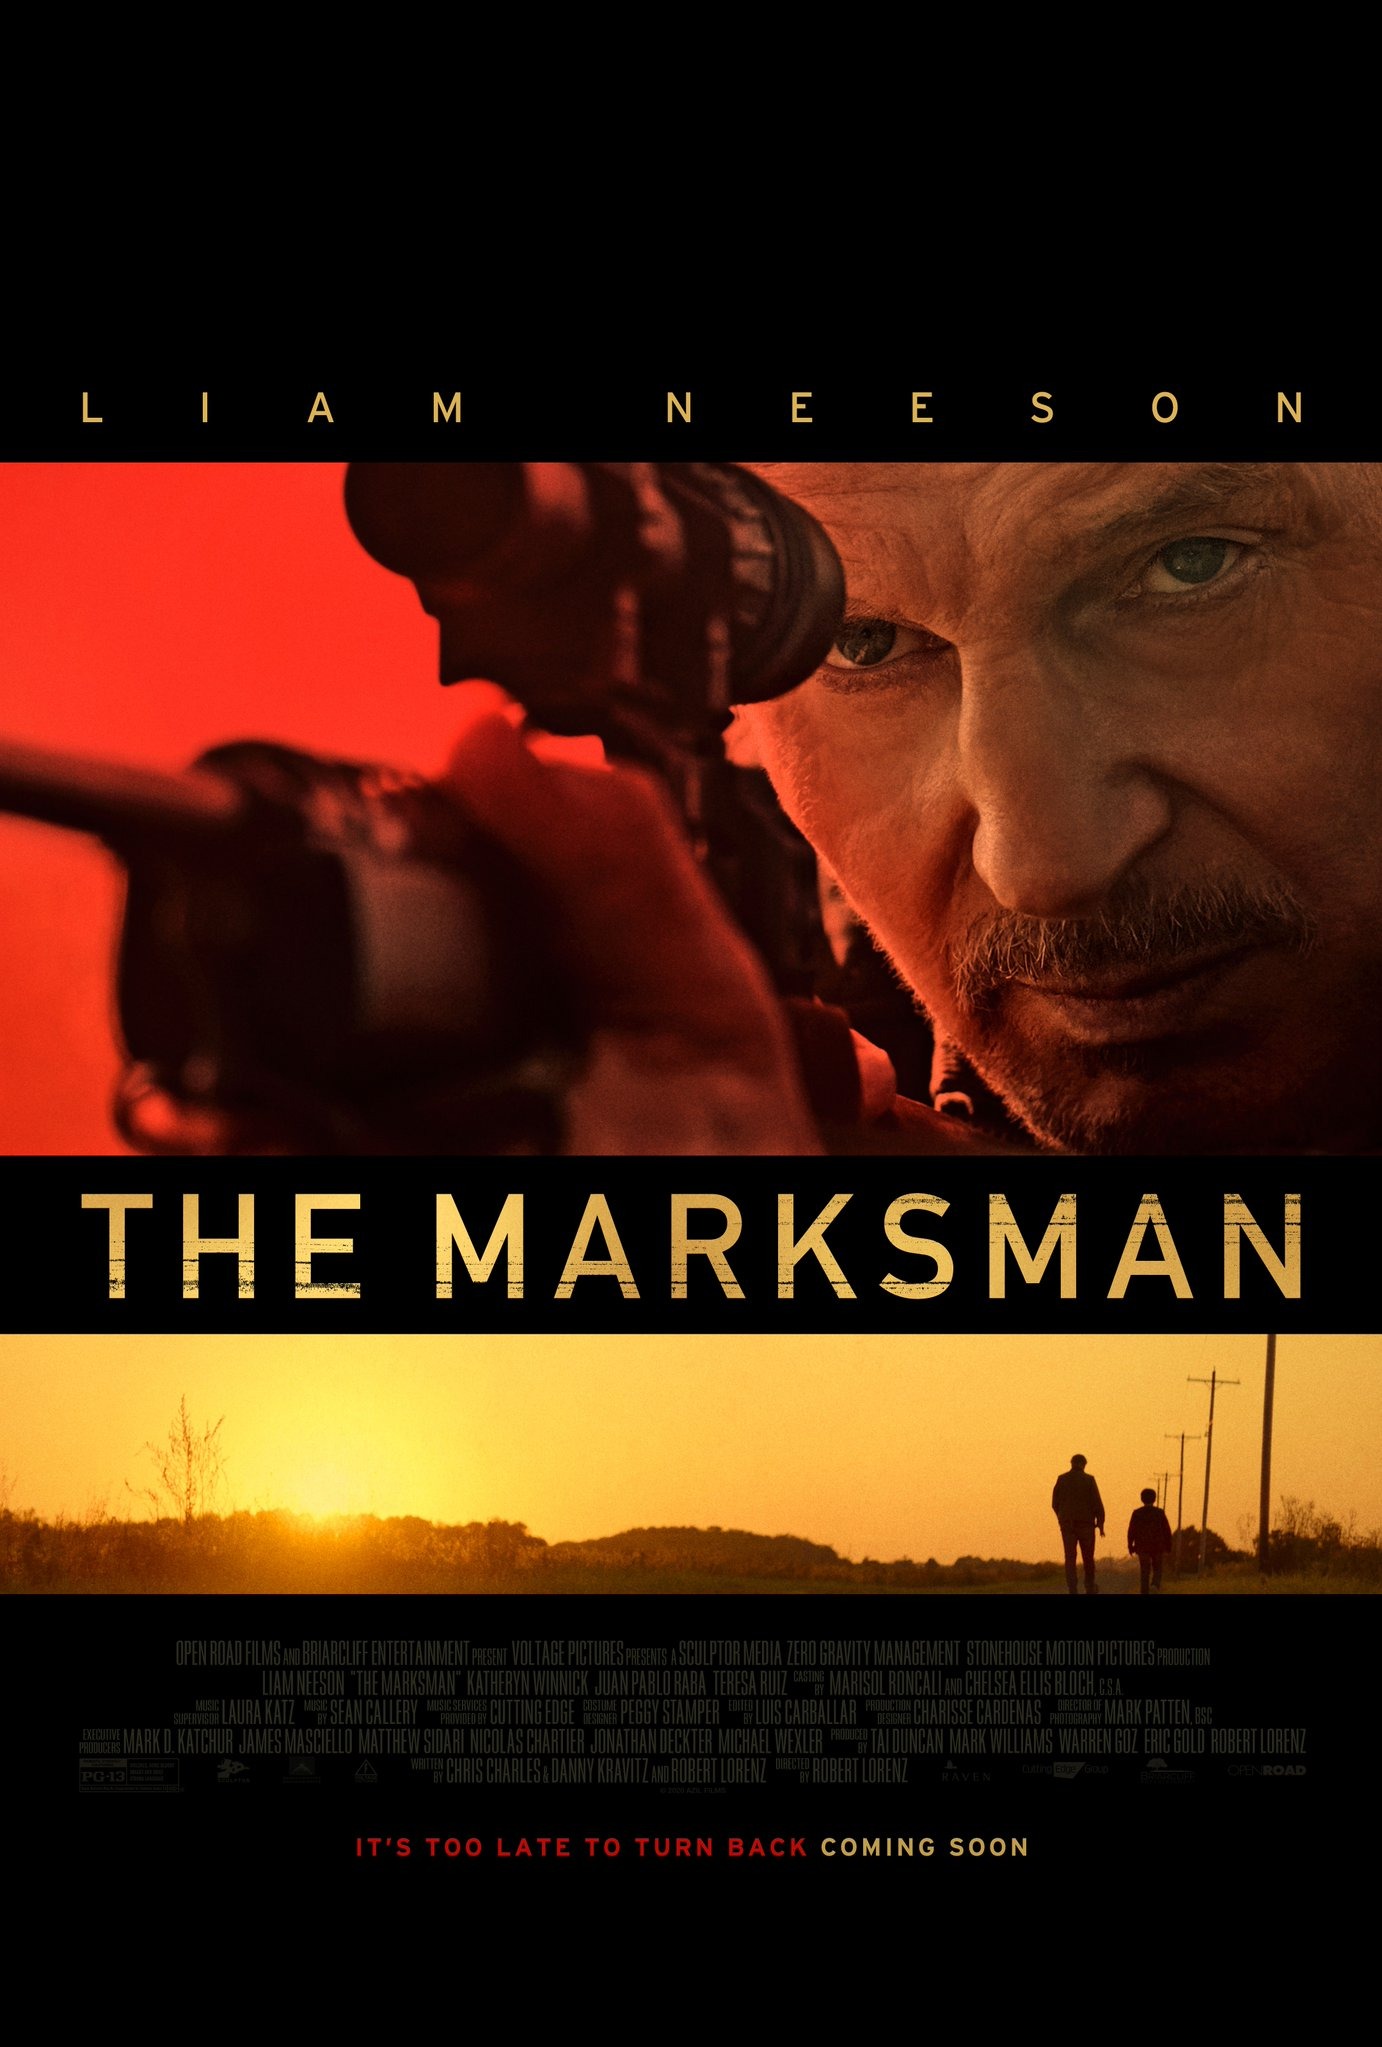 The Marksman Trailer, Movie Interviews, Movie Trailers | FlickDirect